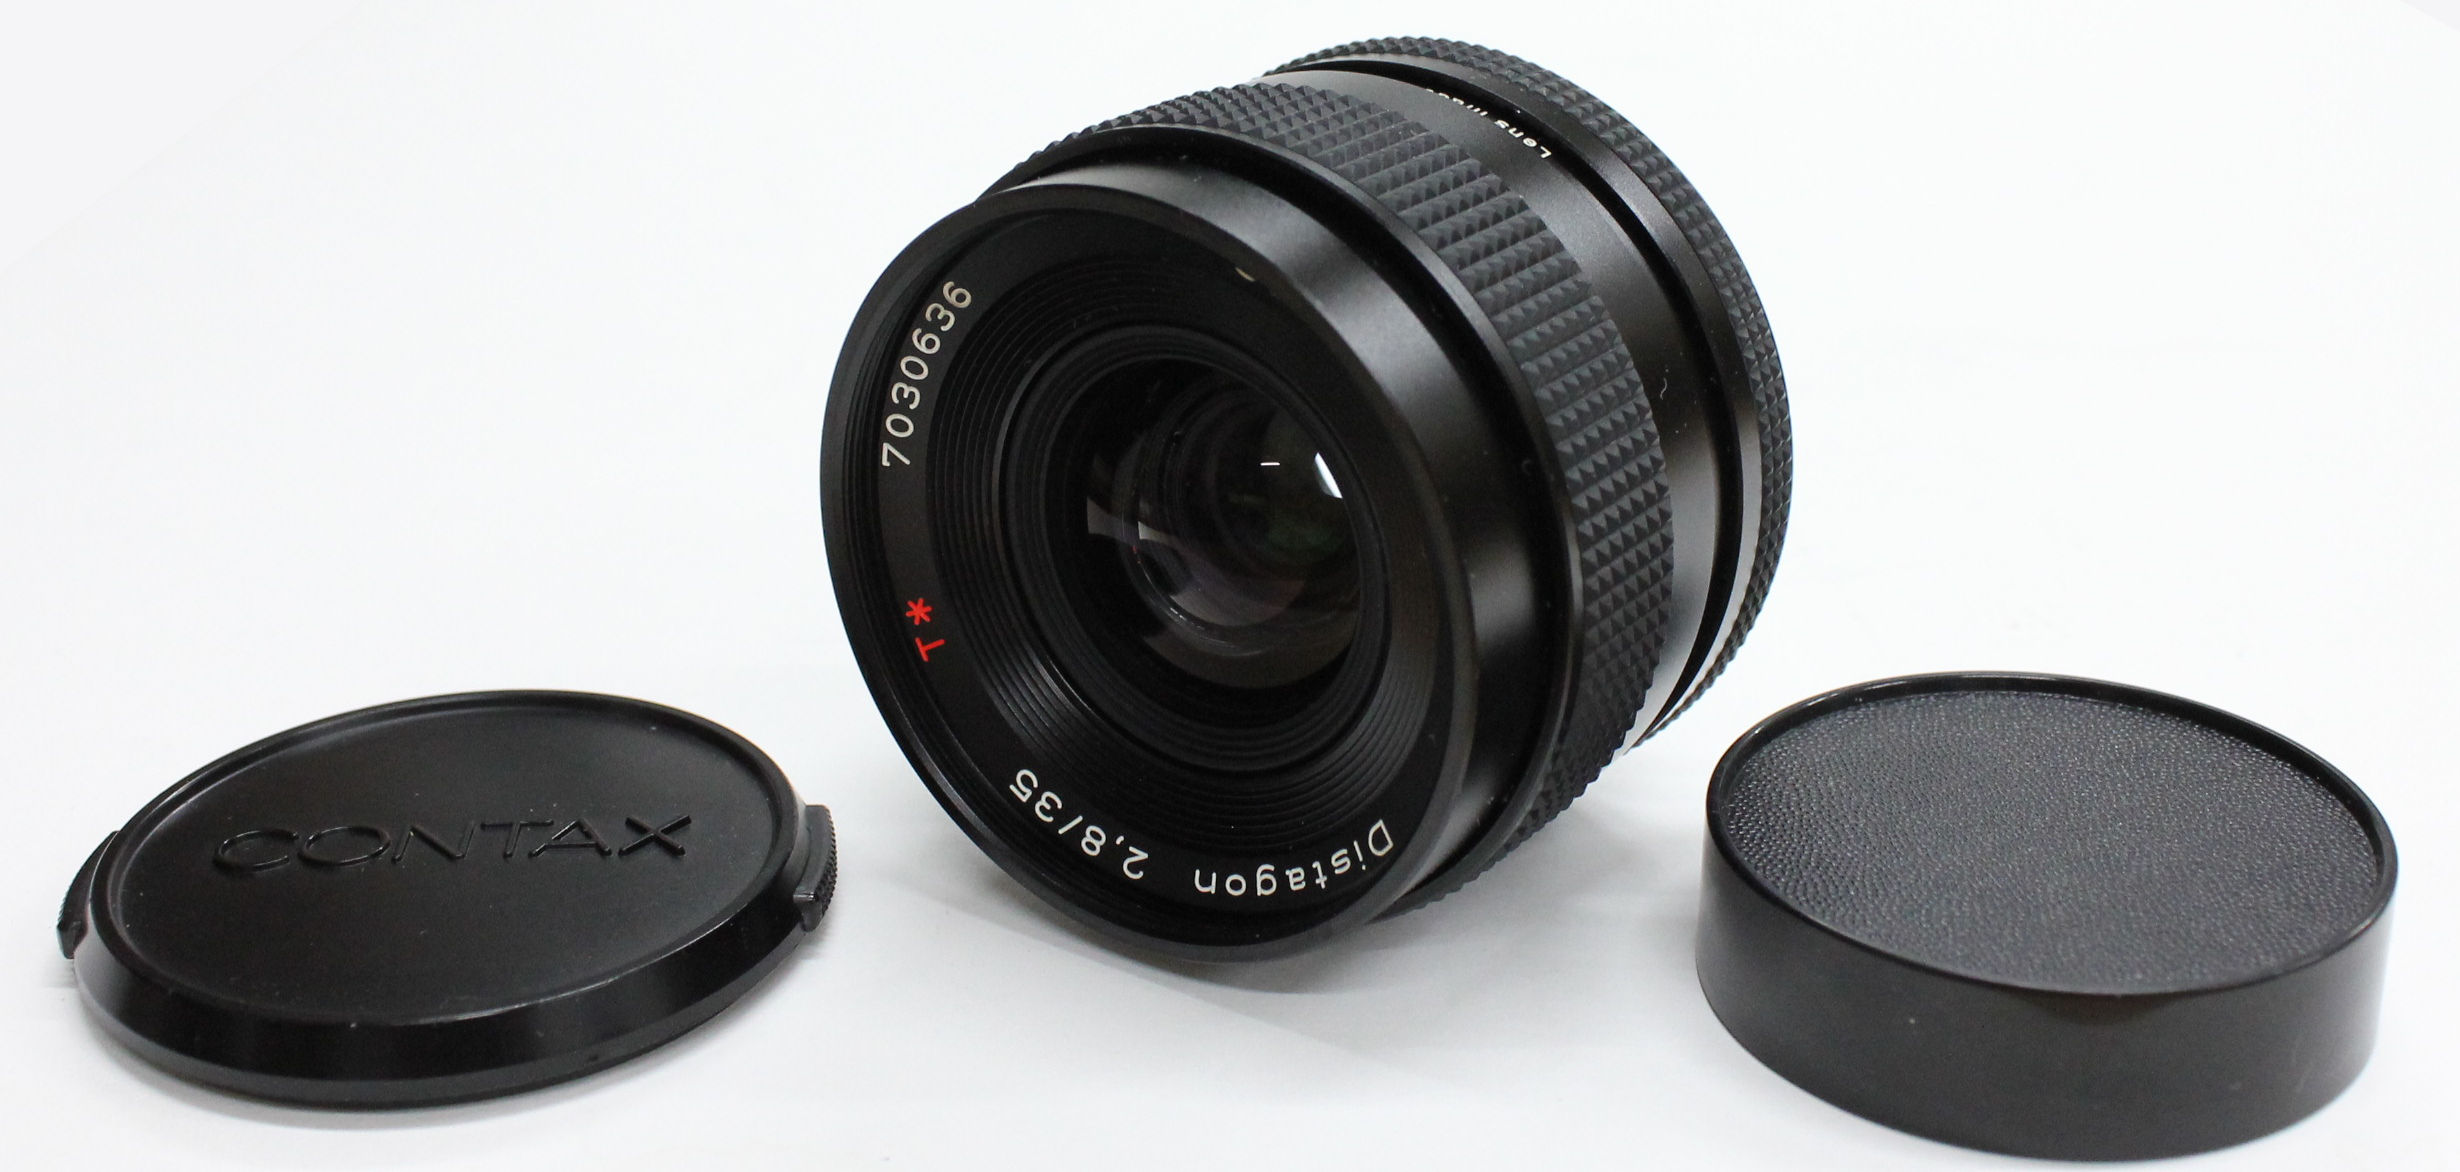 [NEAR MINT] Contax Carl Zeiss Distagon T* 35mm F2.8 MMJ MF Lens from JAPAN